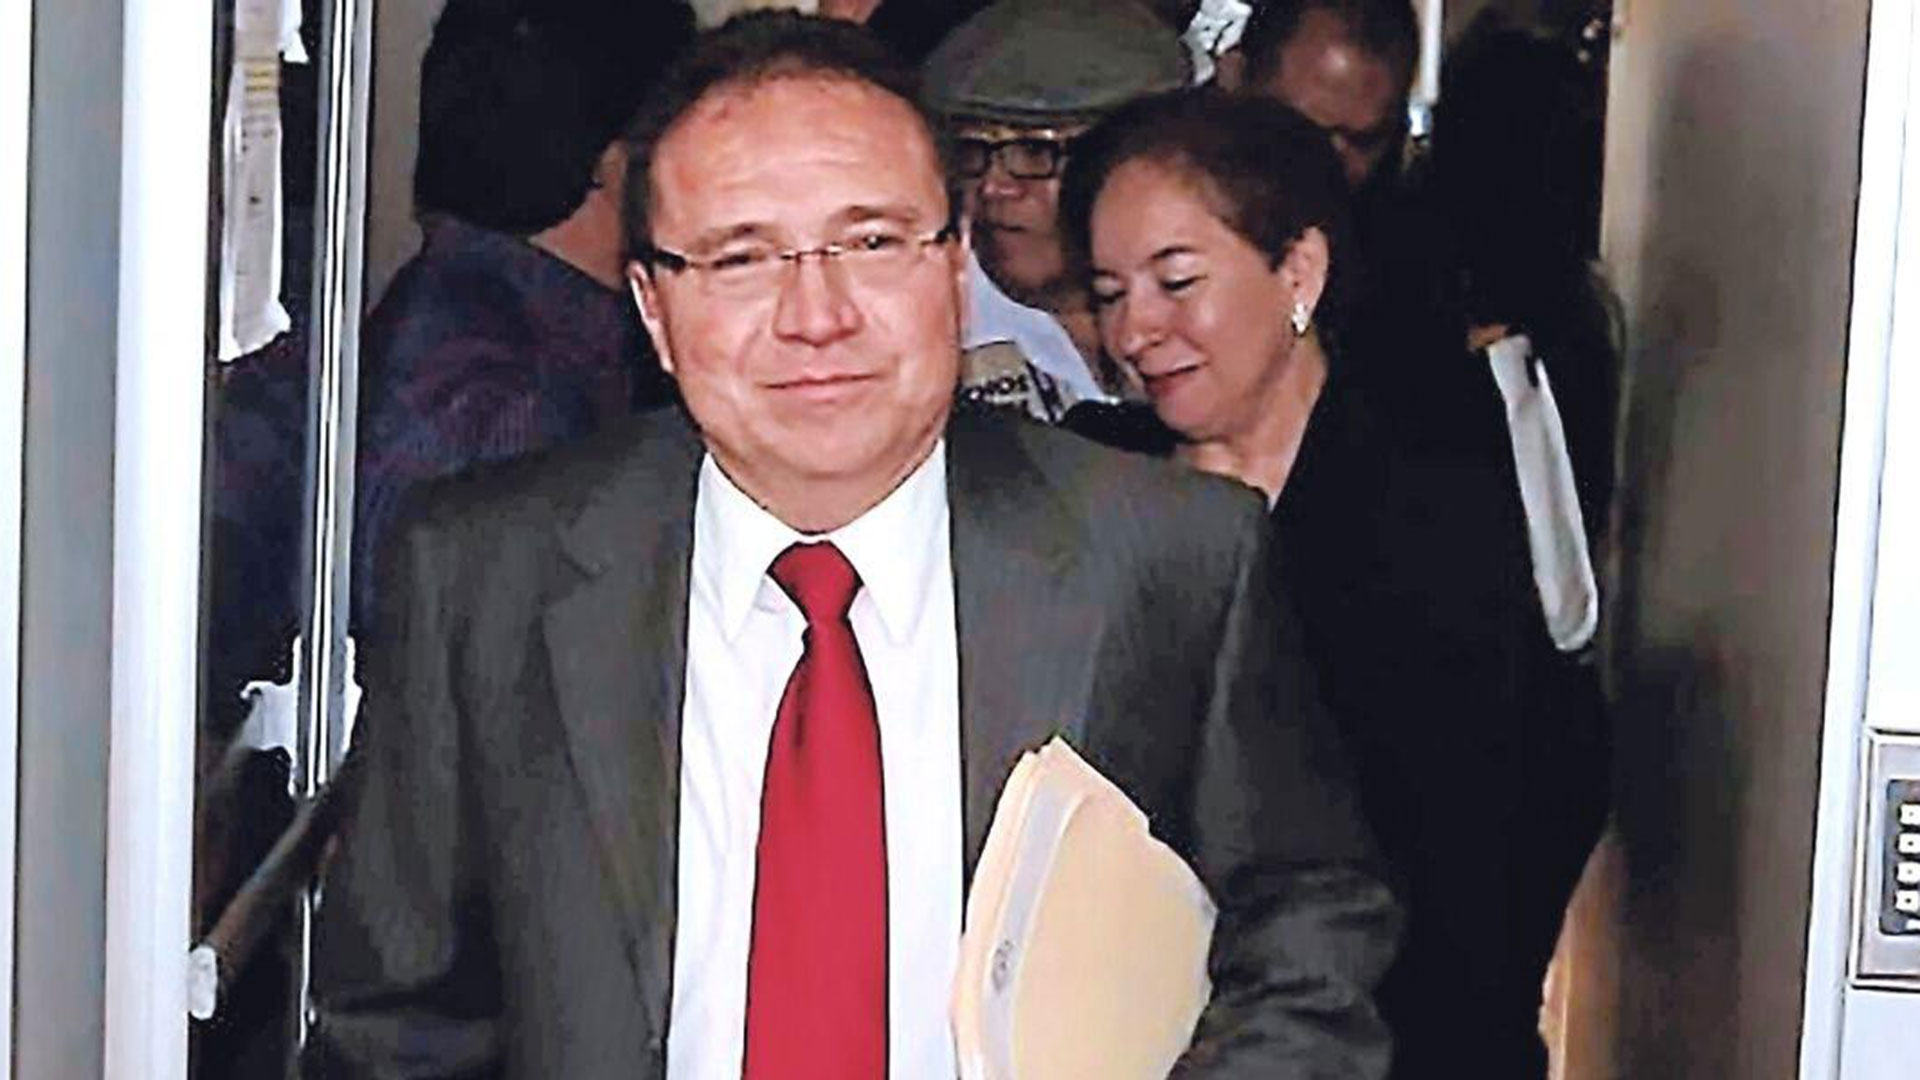 Enrique Flores Lanza fue acusado de actos de corrupción cuando fue funcionario en el gobierno del expresidente Manuel Zelaya, esposo de la presidenta Xiomara Castro. La hermana y la esposa de Flores Lanza aspiran a ser magistradas de la Corte Suprema.